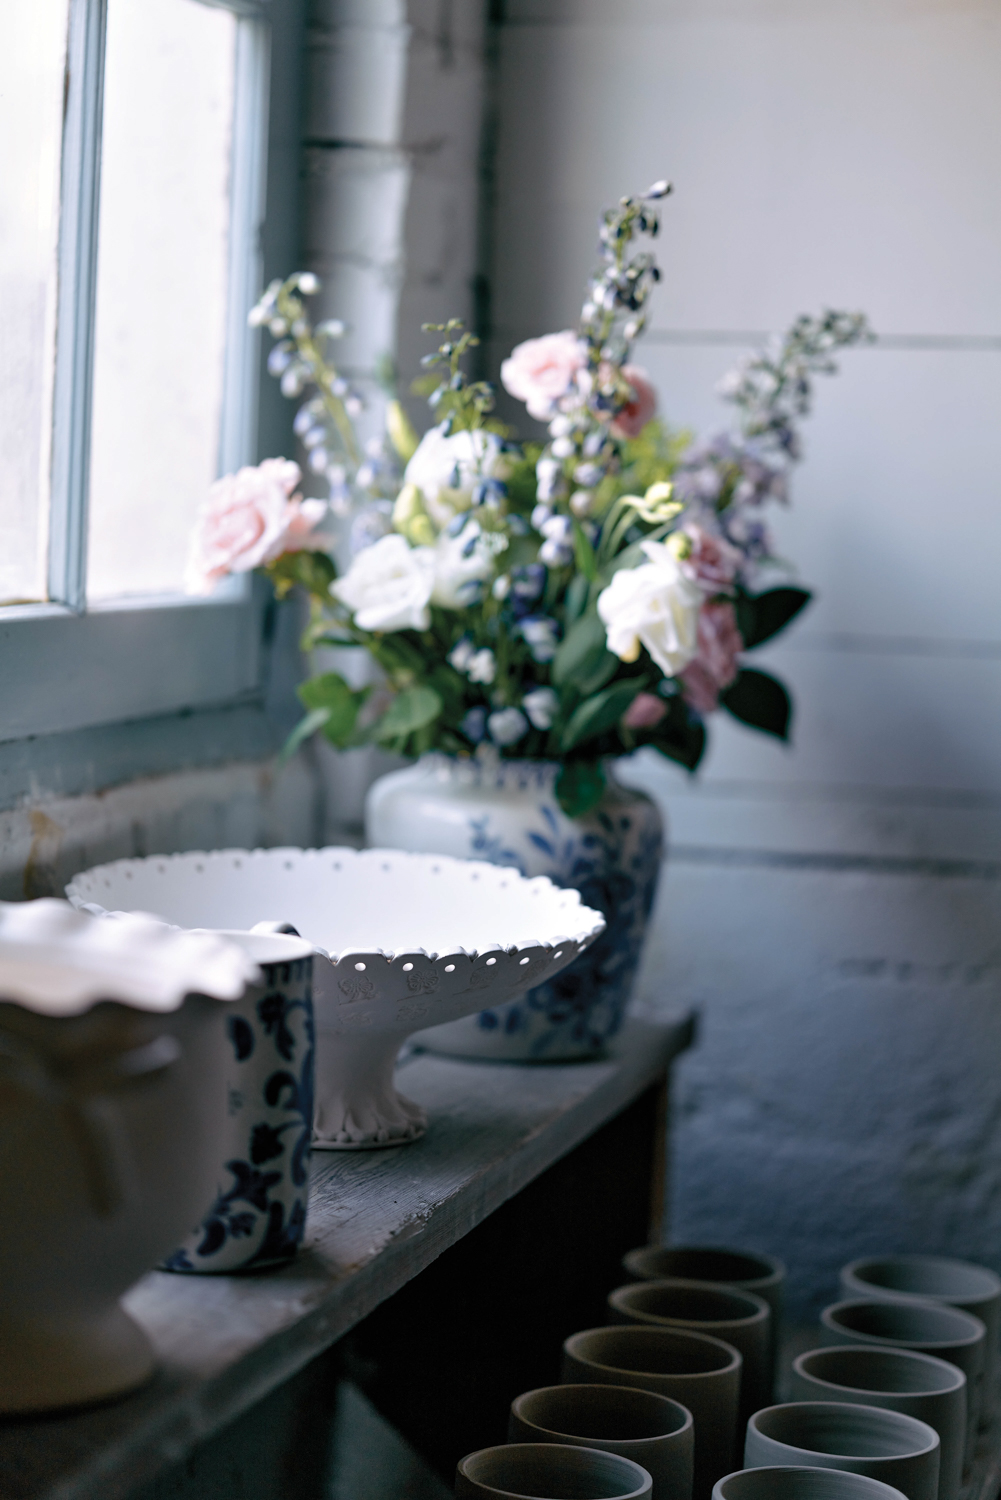 Shelf of ceramics and flowers next to a window providing dim, cool light